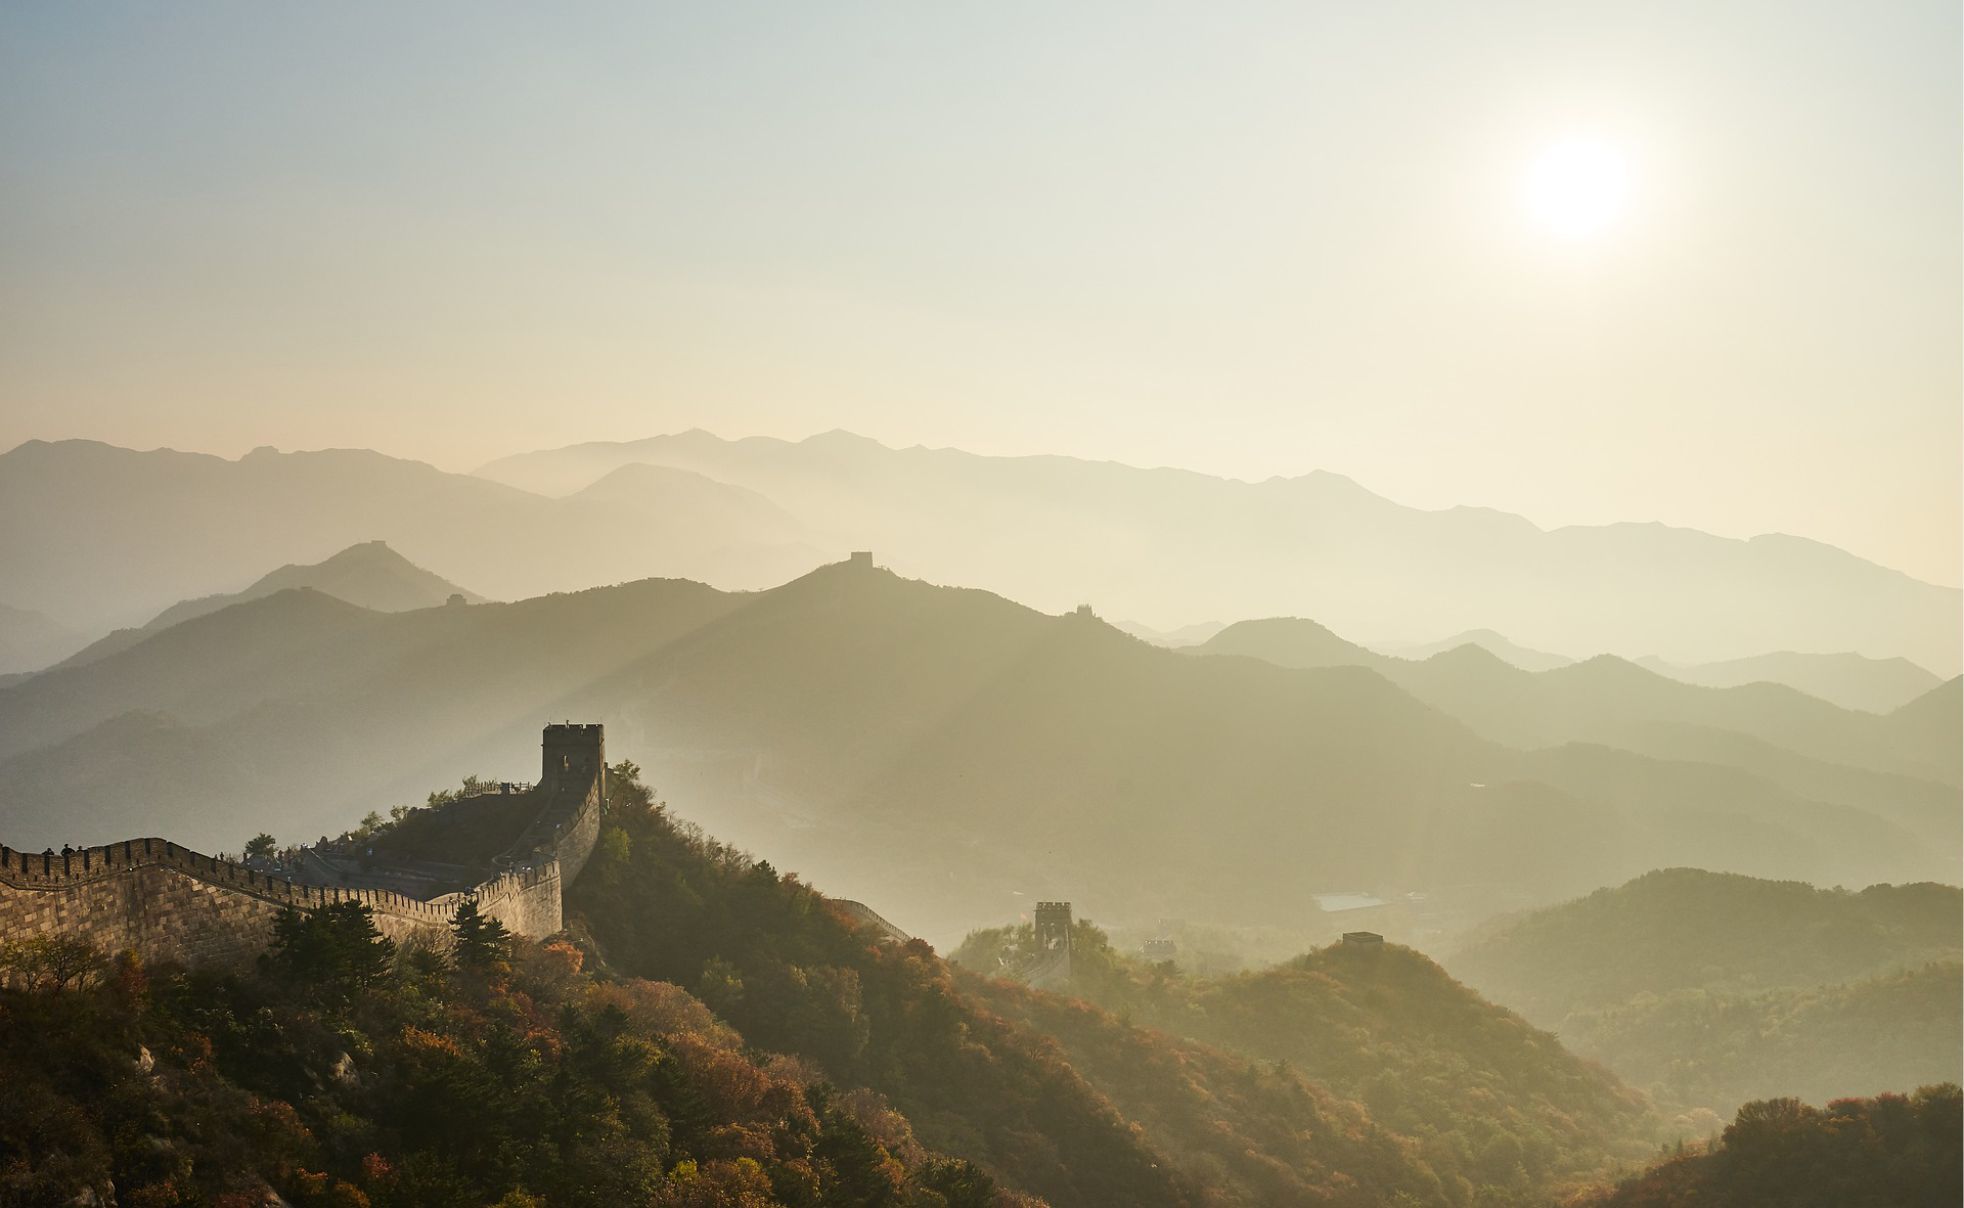 Guía Rápida sobre cómo llegar a la Muralla China por tu cuenta